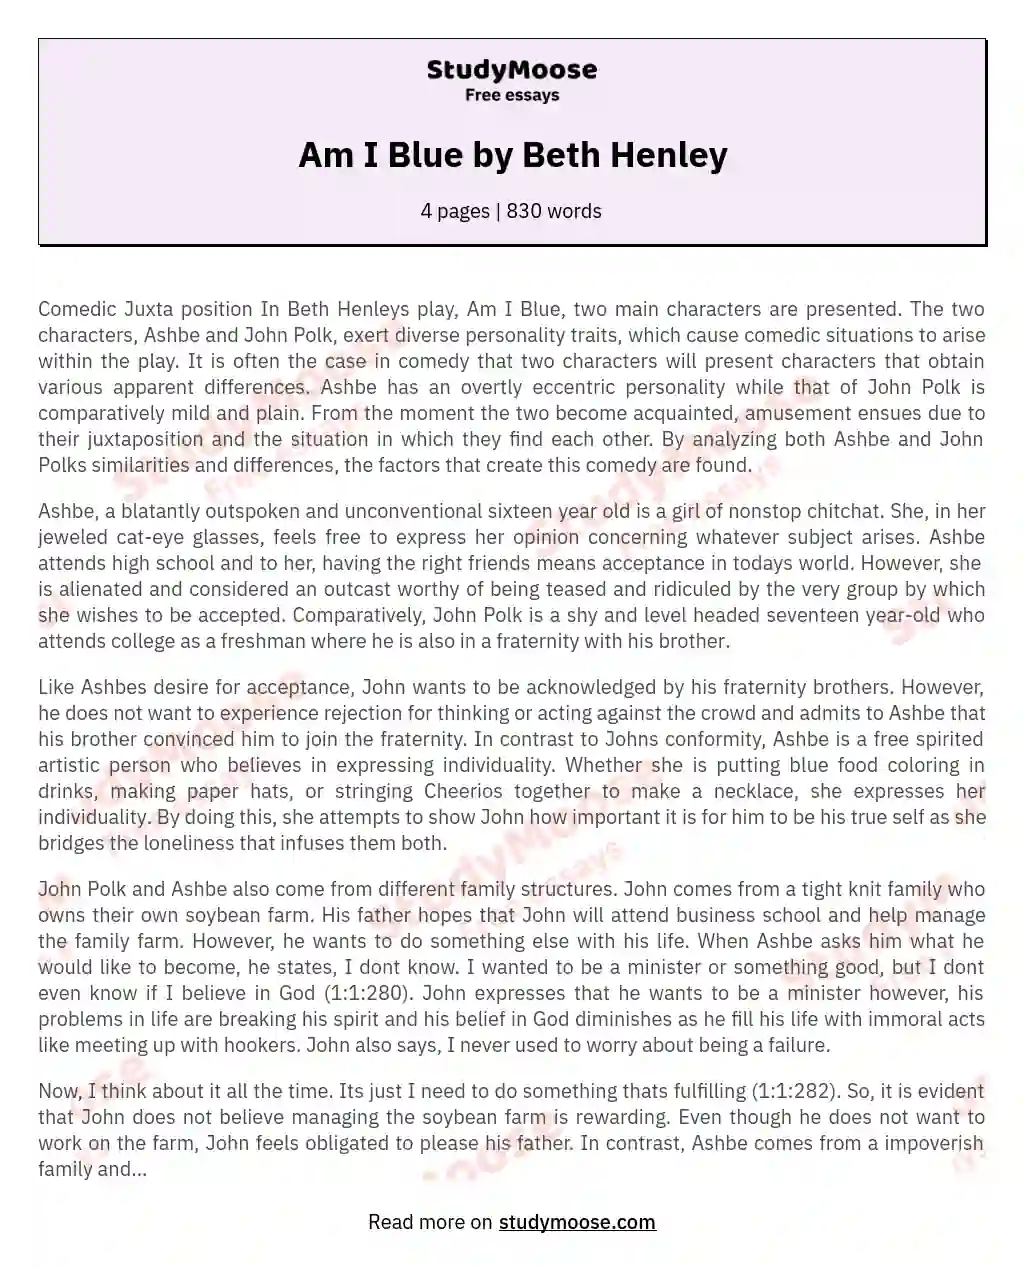 Am I Blue by Beth Henley essay